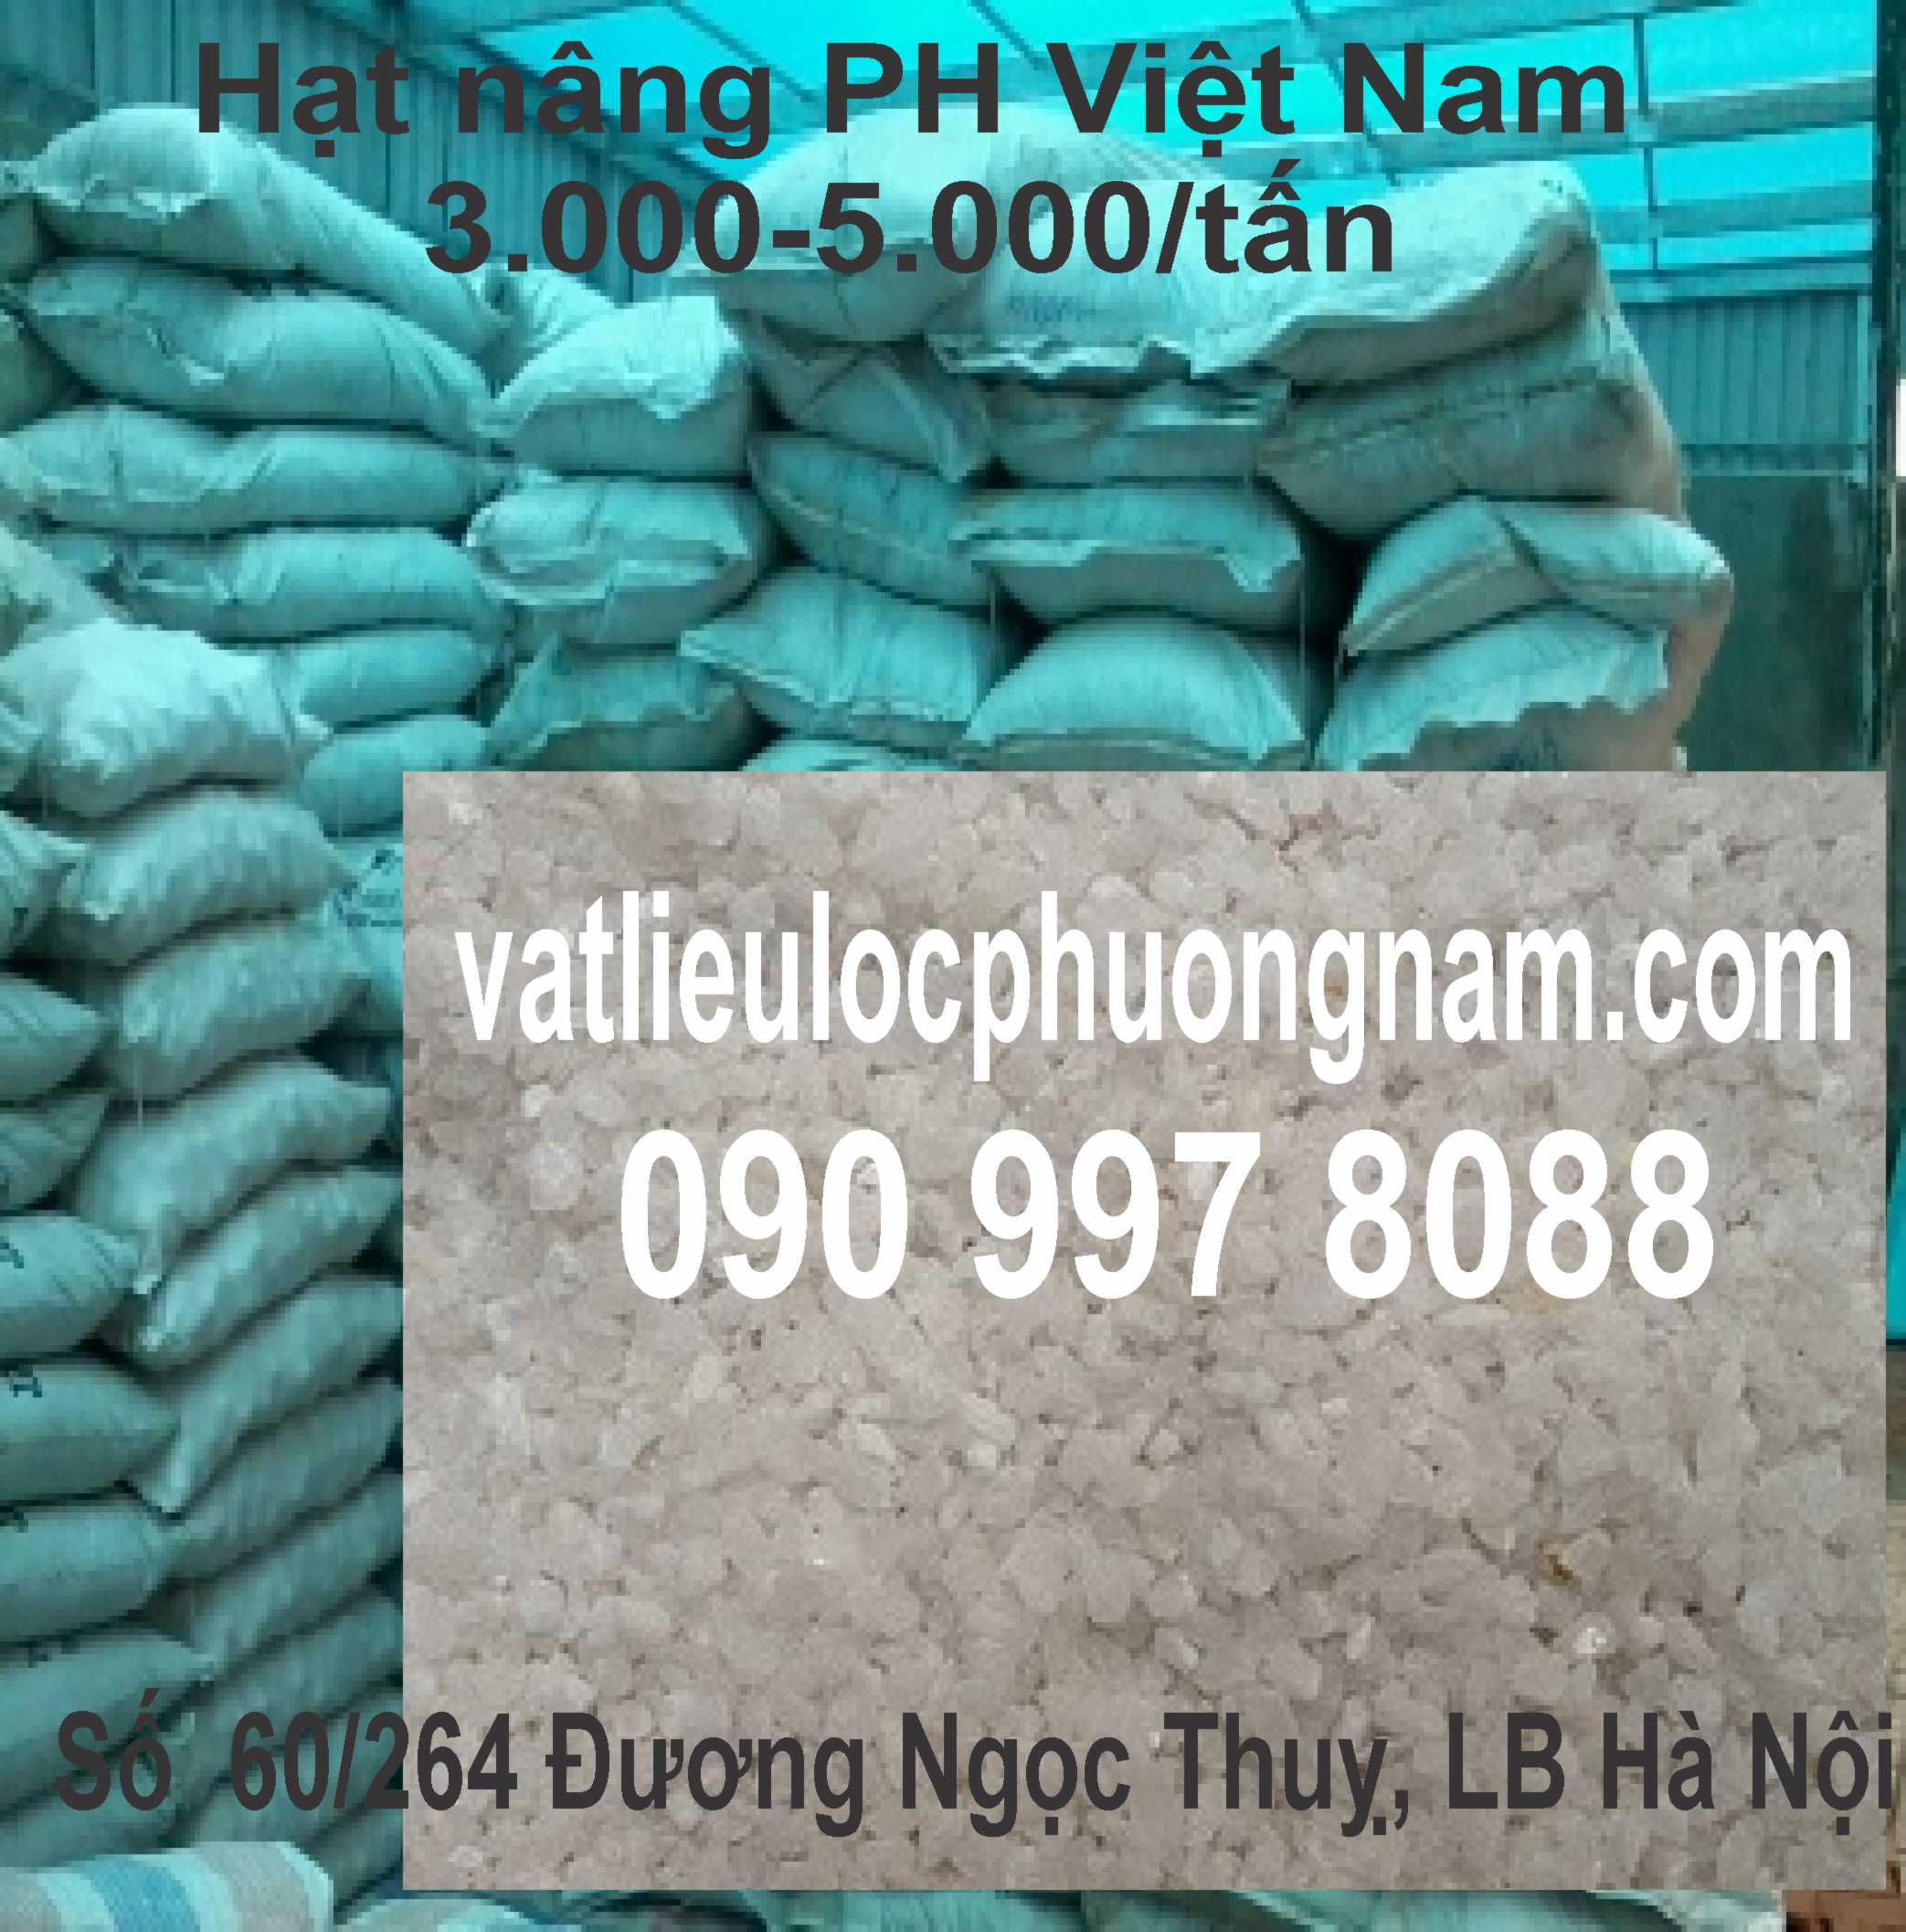 Hạt nâng pH (LS) Việt Nam Tăng độ pH, Xuất xứ Việt Nam